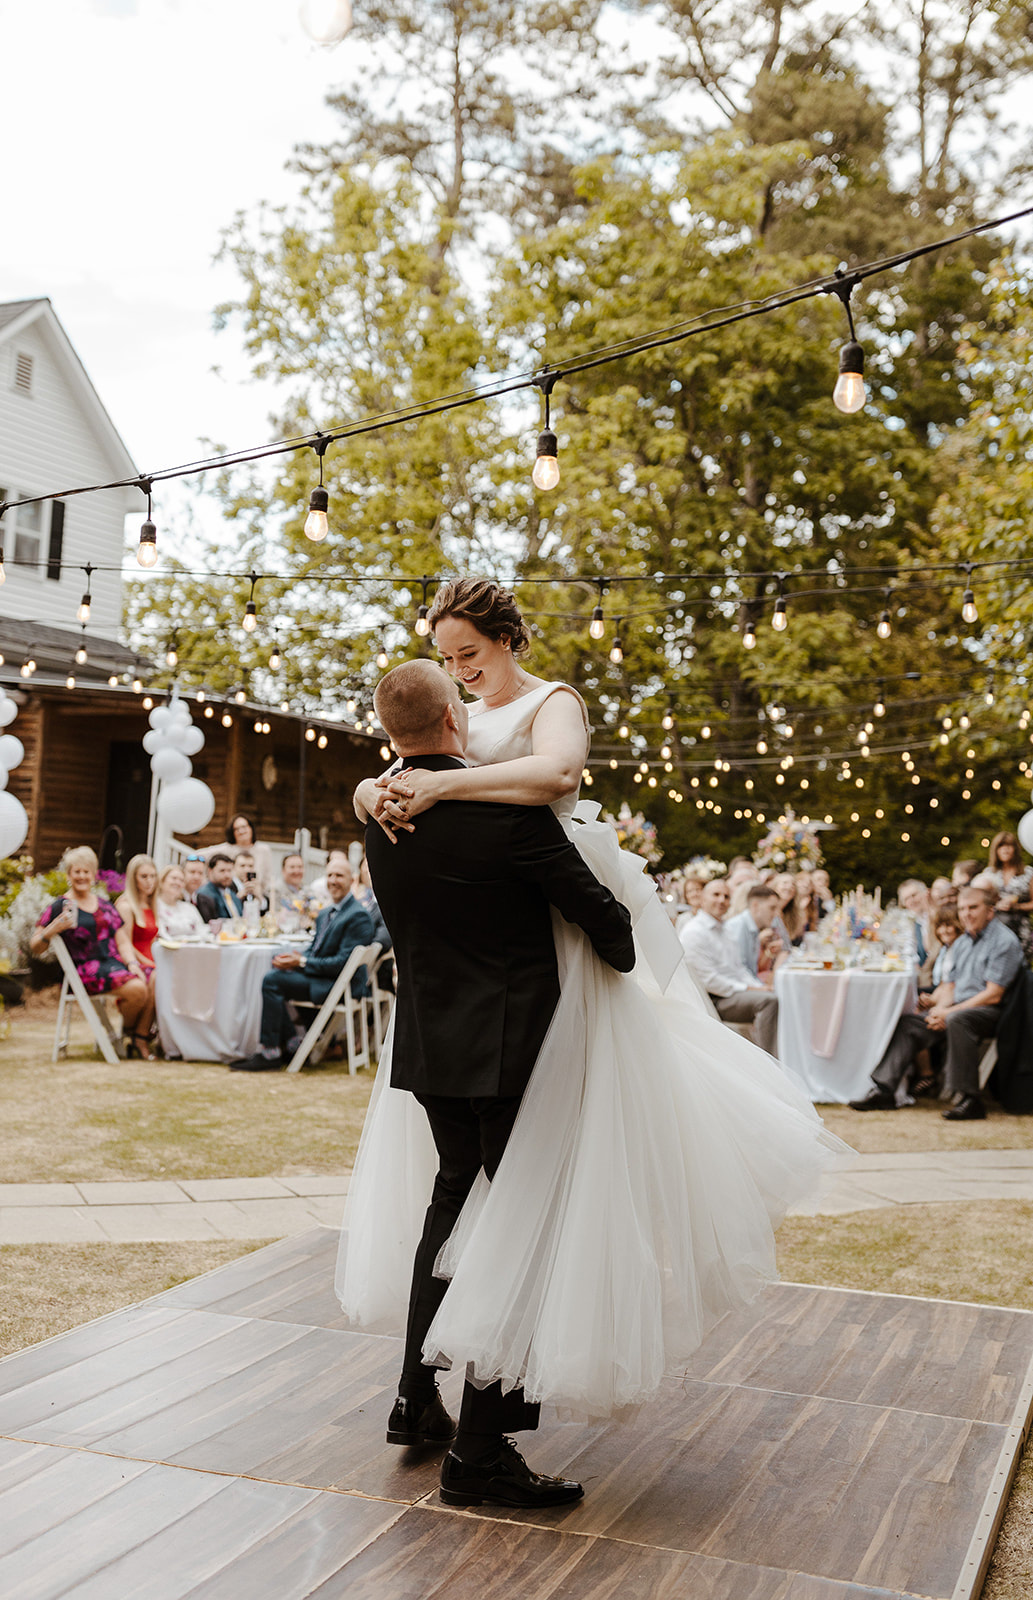 couple performs waltz on outdoor dance floor